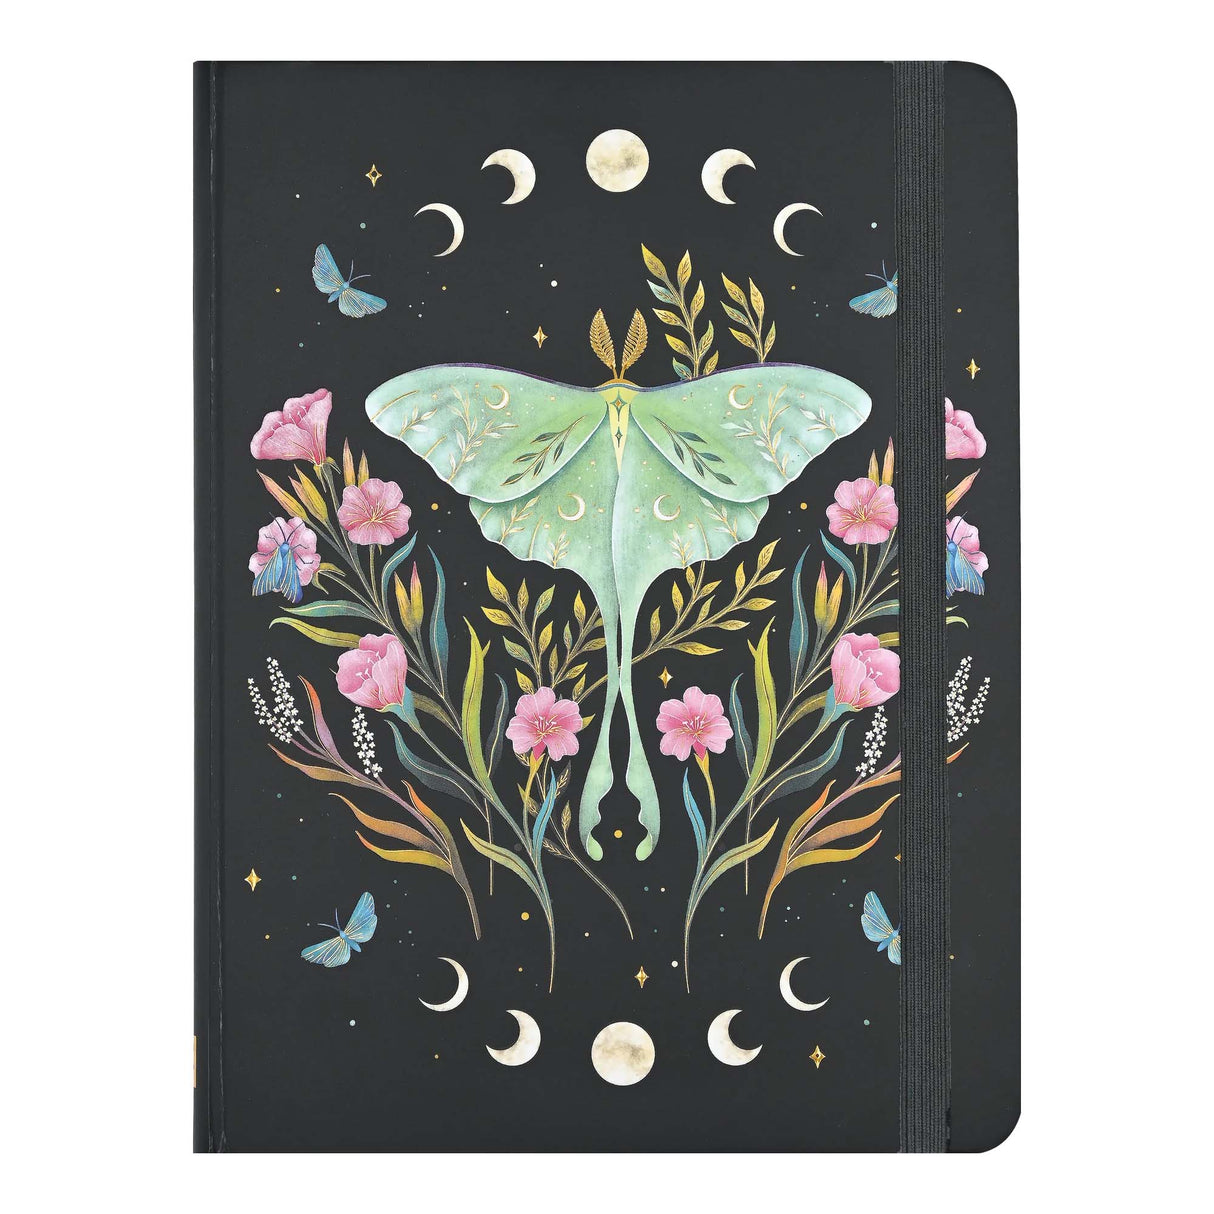 Luna Moth Journal Notebook